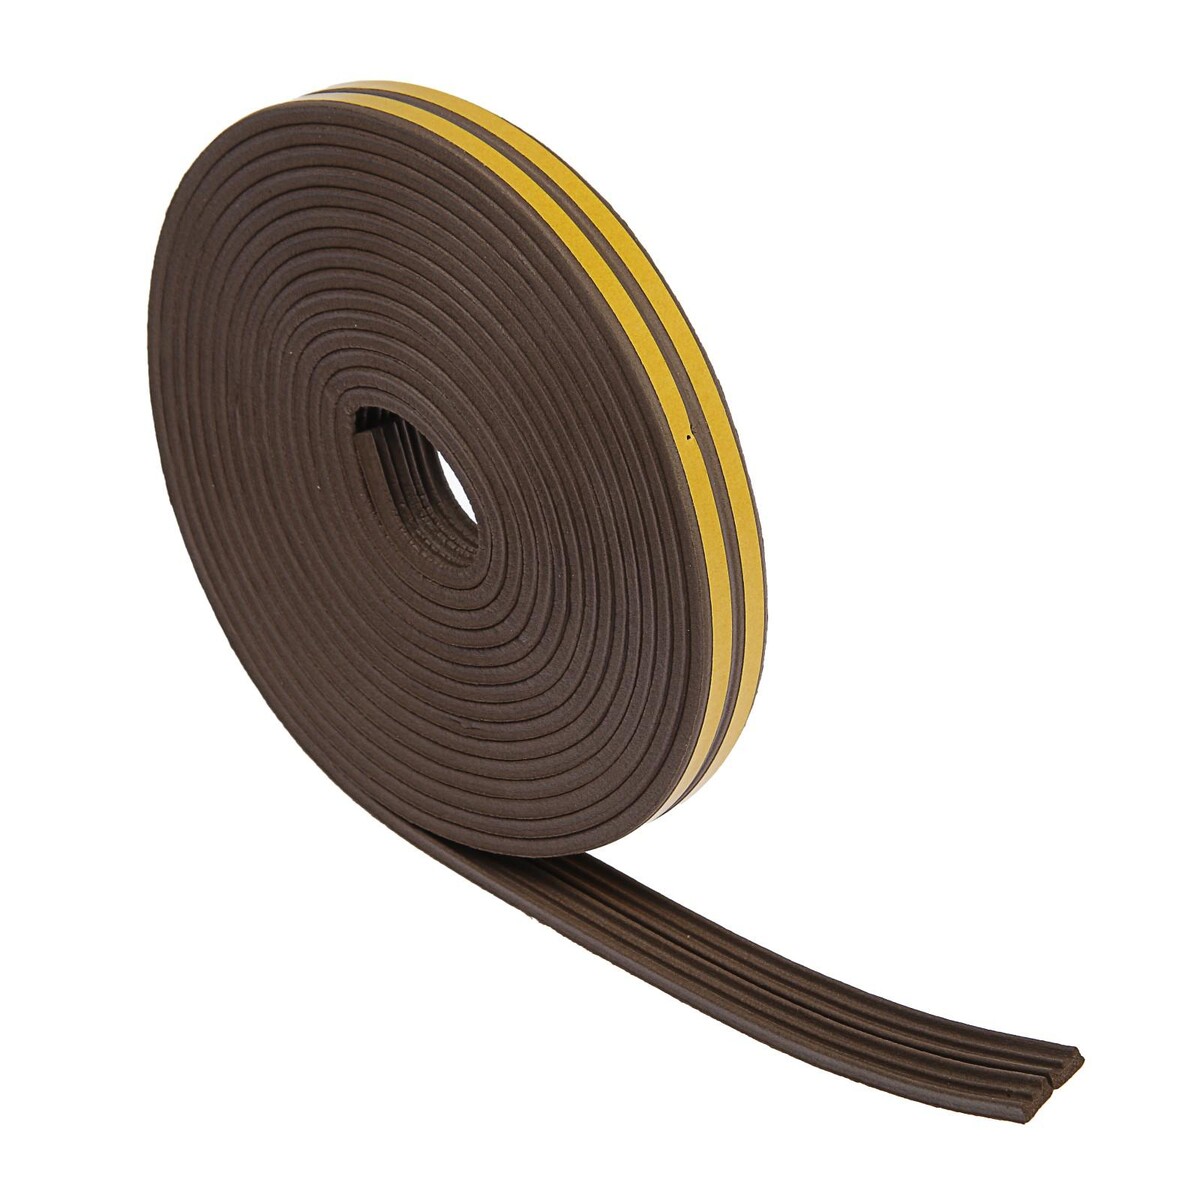 Уплотнитель резиновый тундра krep, профиль е, размер 4х9 мм, коричневый, в упаковке 10 м. звериный профиль